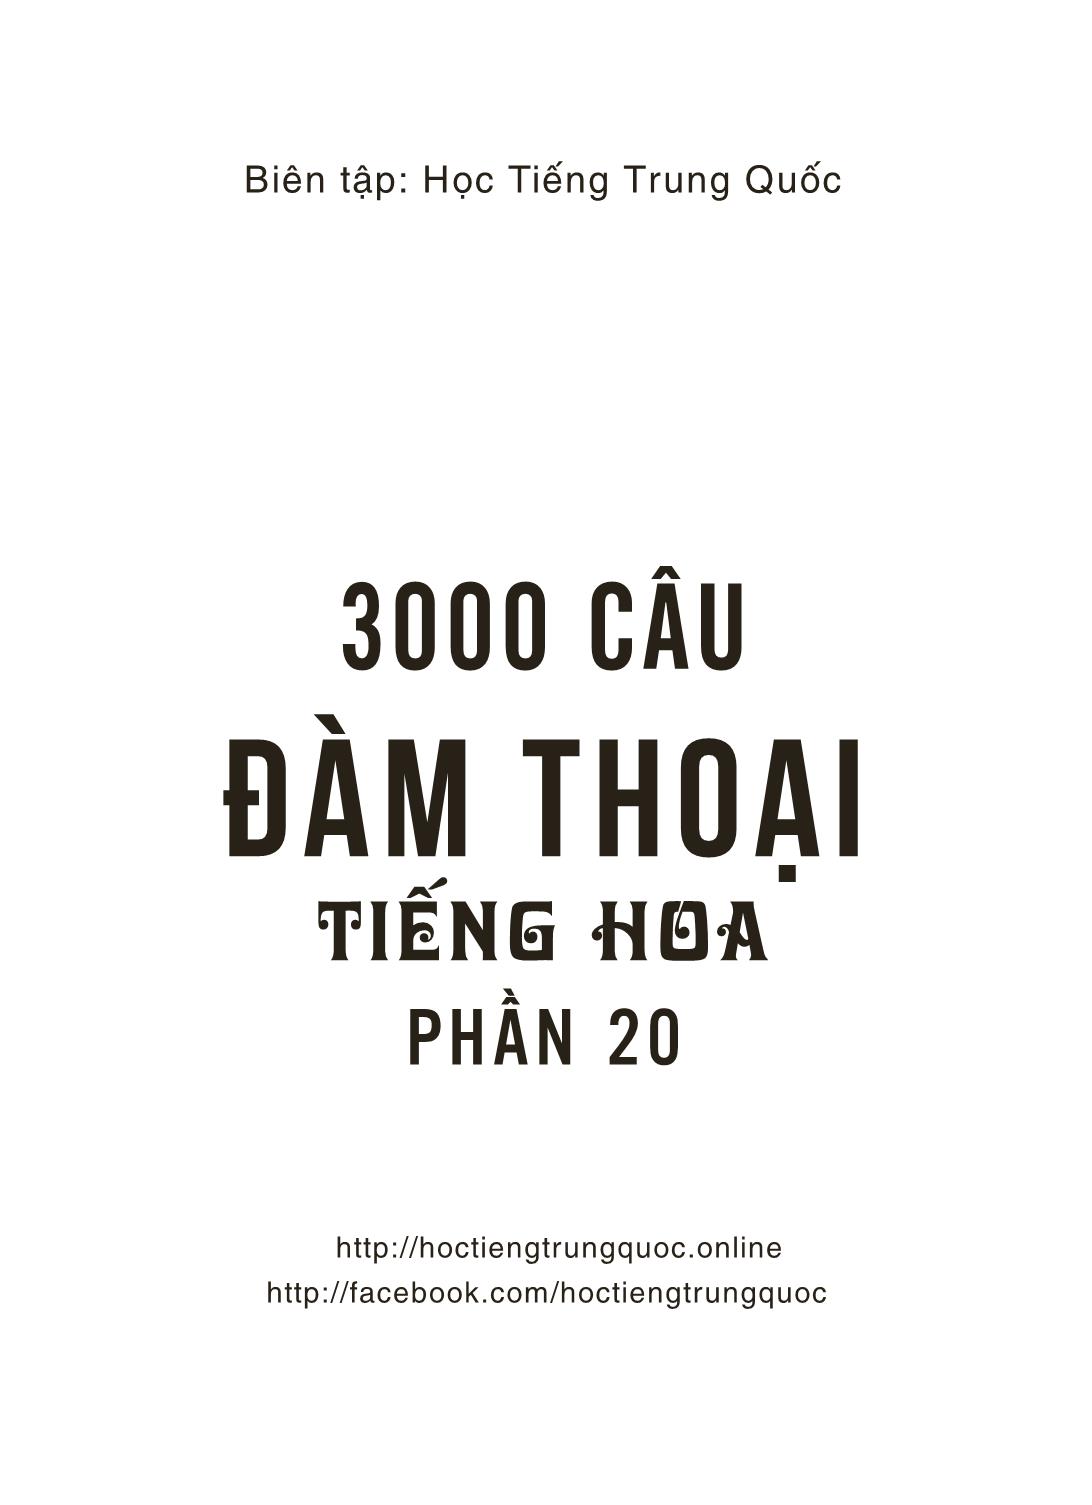 3000 Câu đàm thoại tiếng Hoa - Phần 20 trang 2